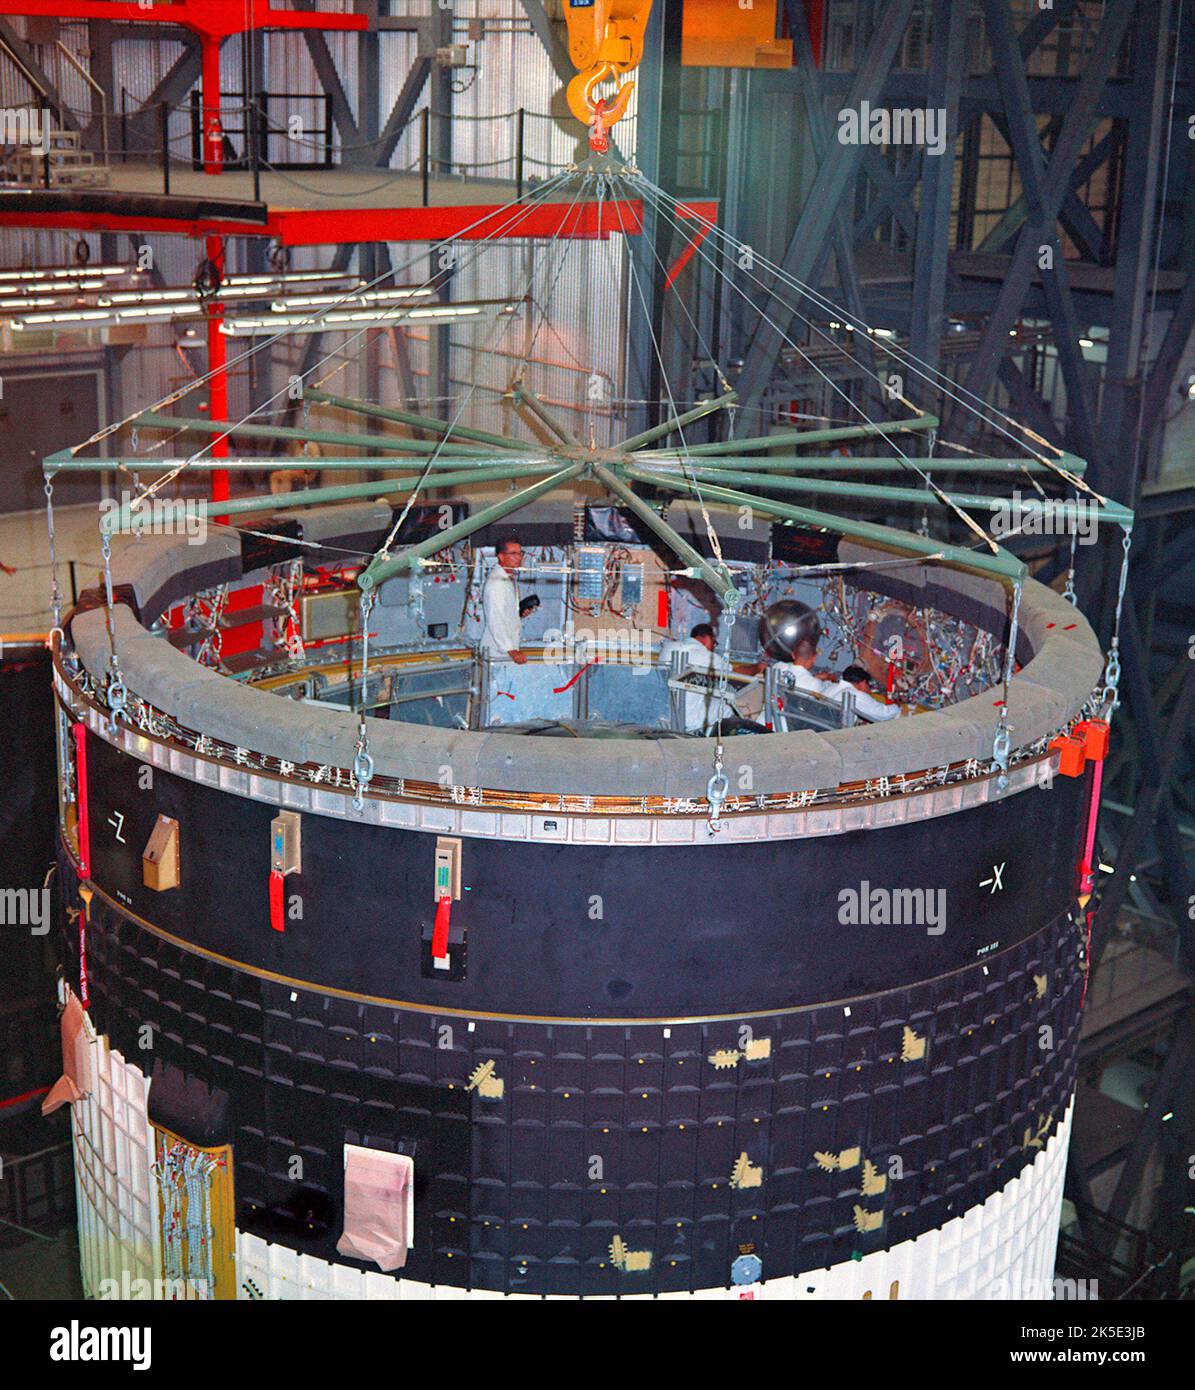 Die Stapelung der AS-501-Etappen für die Apollo 4-Mission begann am Kennedy Space Center der NASA und wurde mit der Platzierung der Instrumenteneinheit am 25 February1967 abgeschlossen. Die Apollo-4-Mission war der erste All-up-Test der Saturn-V-Rakete, der alle Aspekte des Saturn-V-Trägerraketenfahrzeugs testen sollte. Die Mission galt als erfolgreicher Test. Der Saturn V wurde am Marshall Space Flight Center der NASA entwickelt. Ein optimiertes NASA-Bild: Quelle: NASA Stockfoto